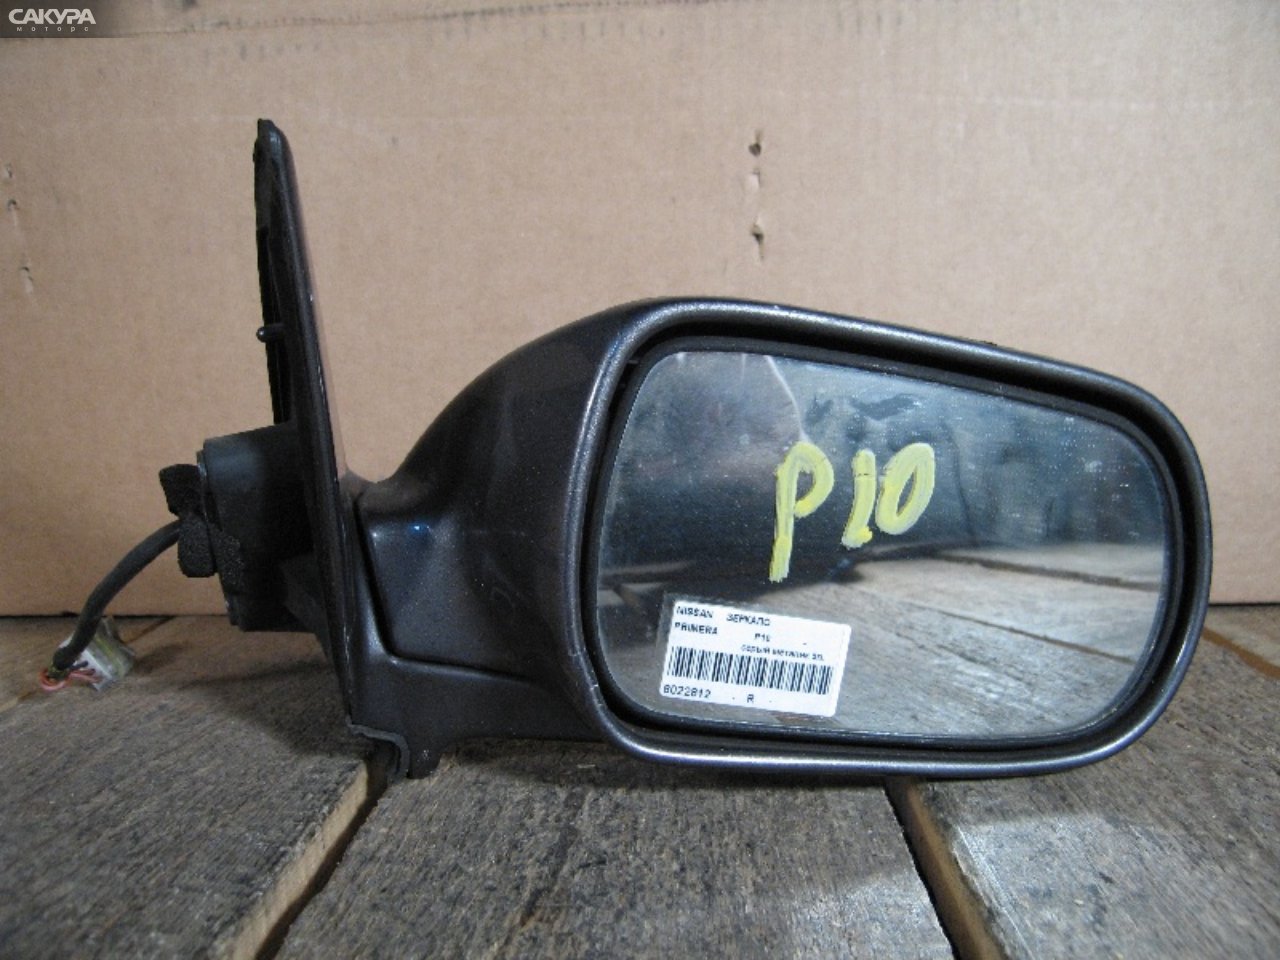 Зеркало боковое правое Nissan Primera P10: купить в Сакура Абакан.